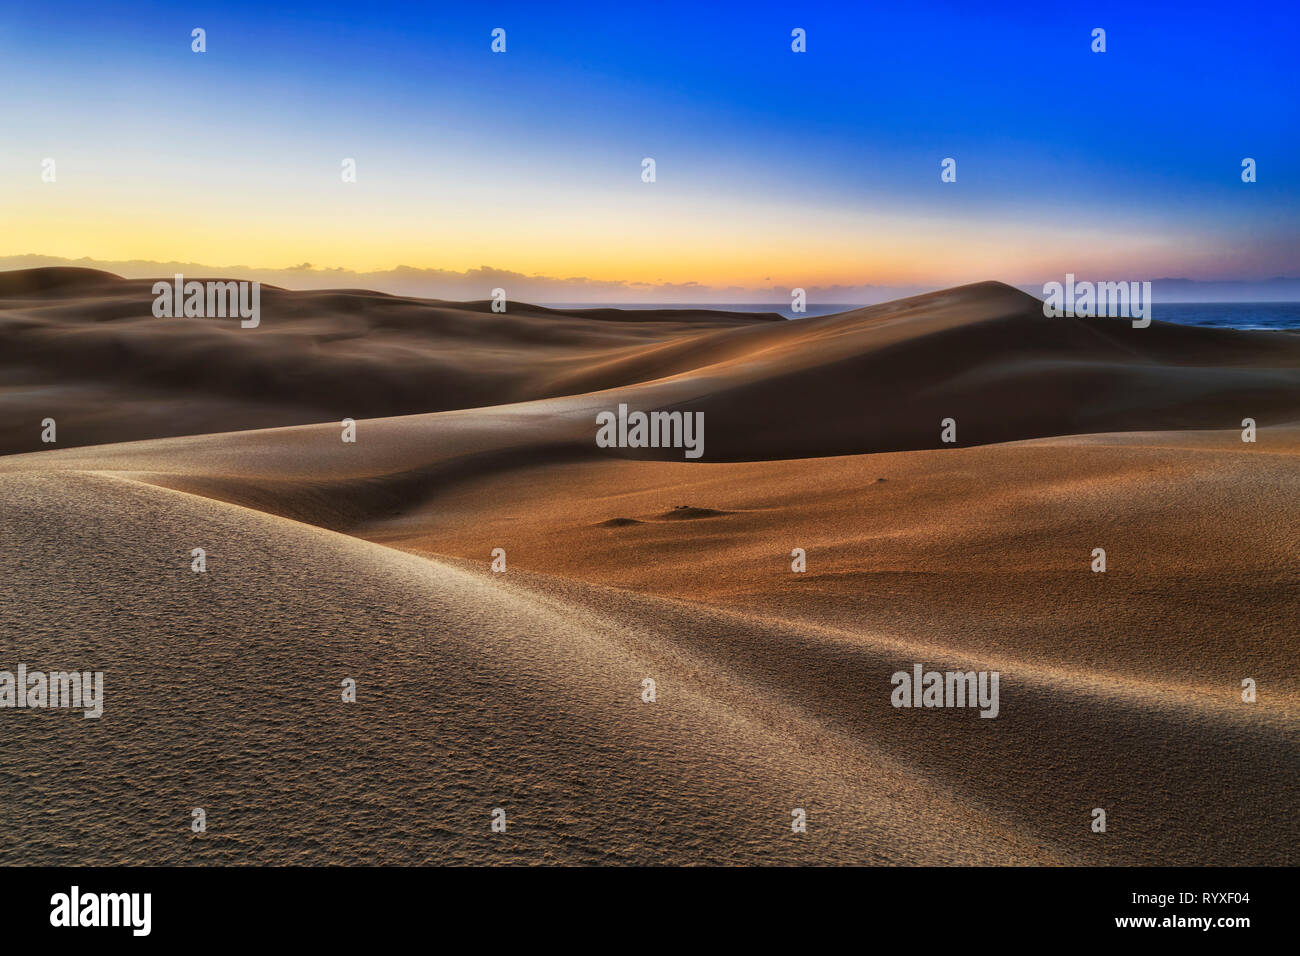 Vida interminable desierto de dunas de arena a orillas del Océano Pacífico - Stockton Beach. amanecer temprano por la mañana en la fría luz brillando en el cielo azul surf vírgenes Foto de stock